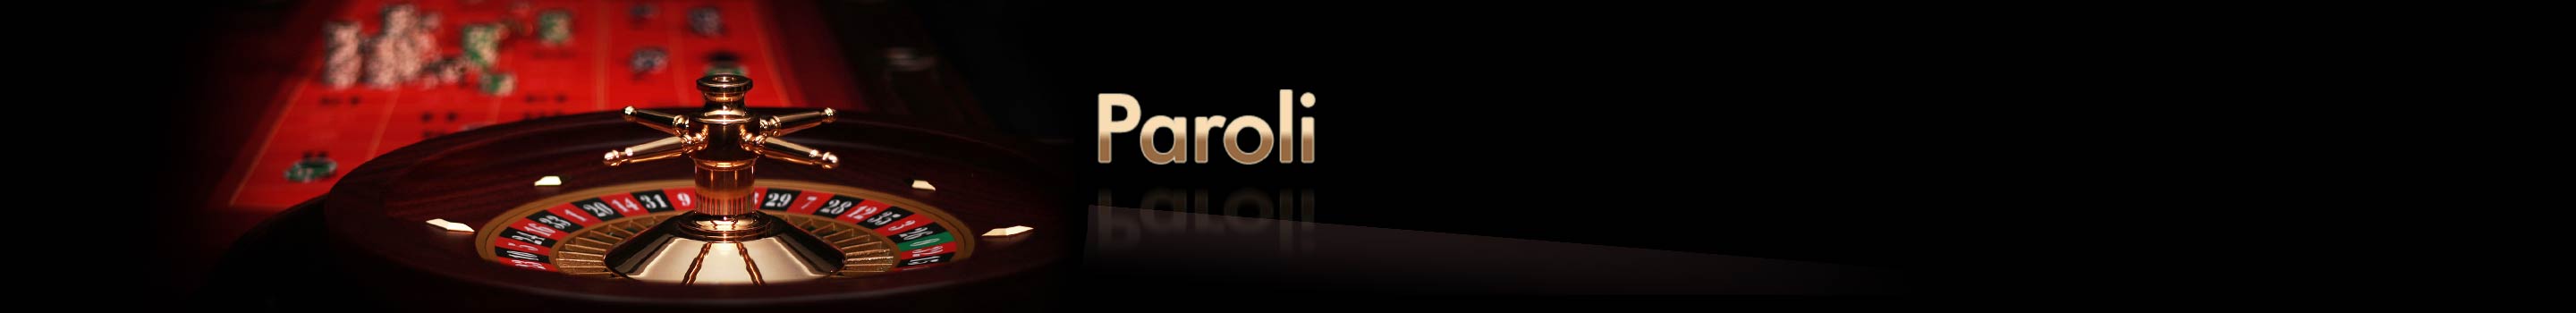 Paroli-System